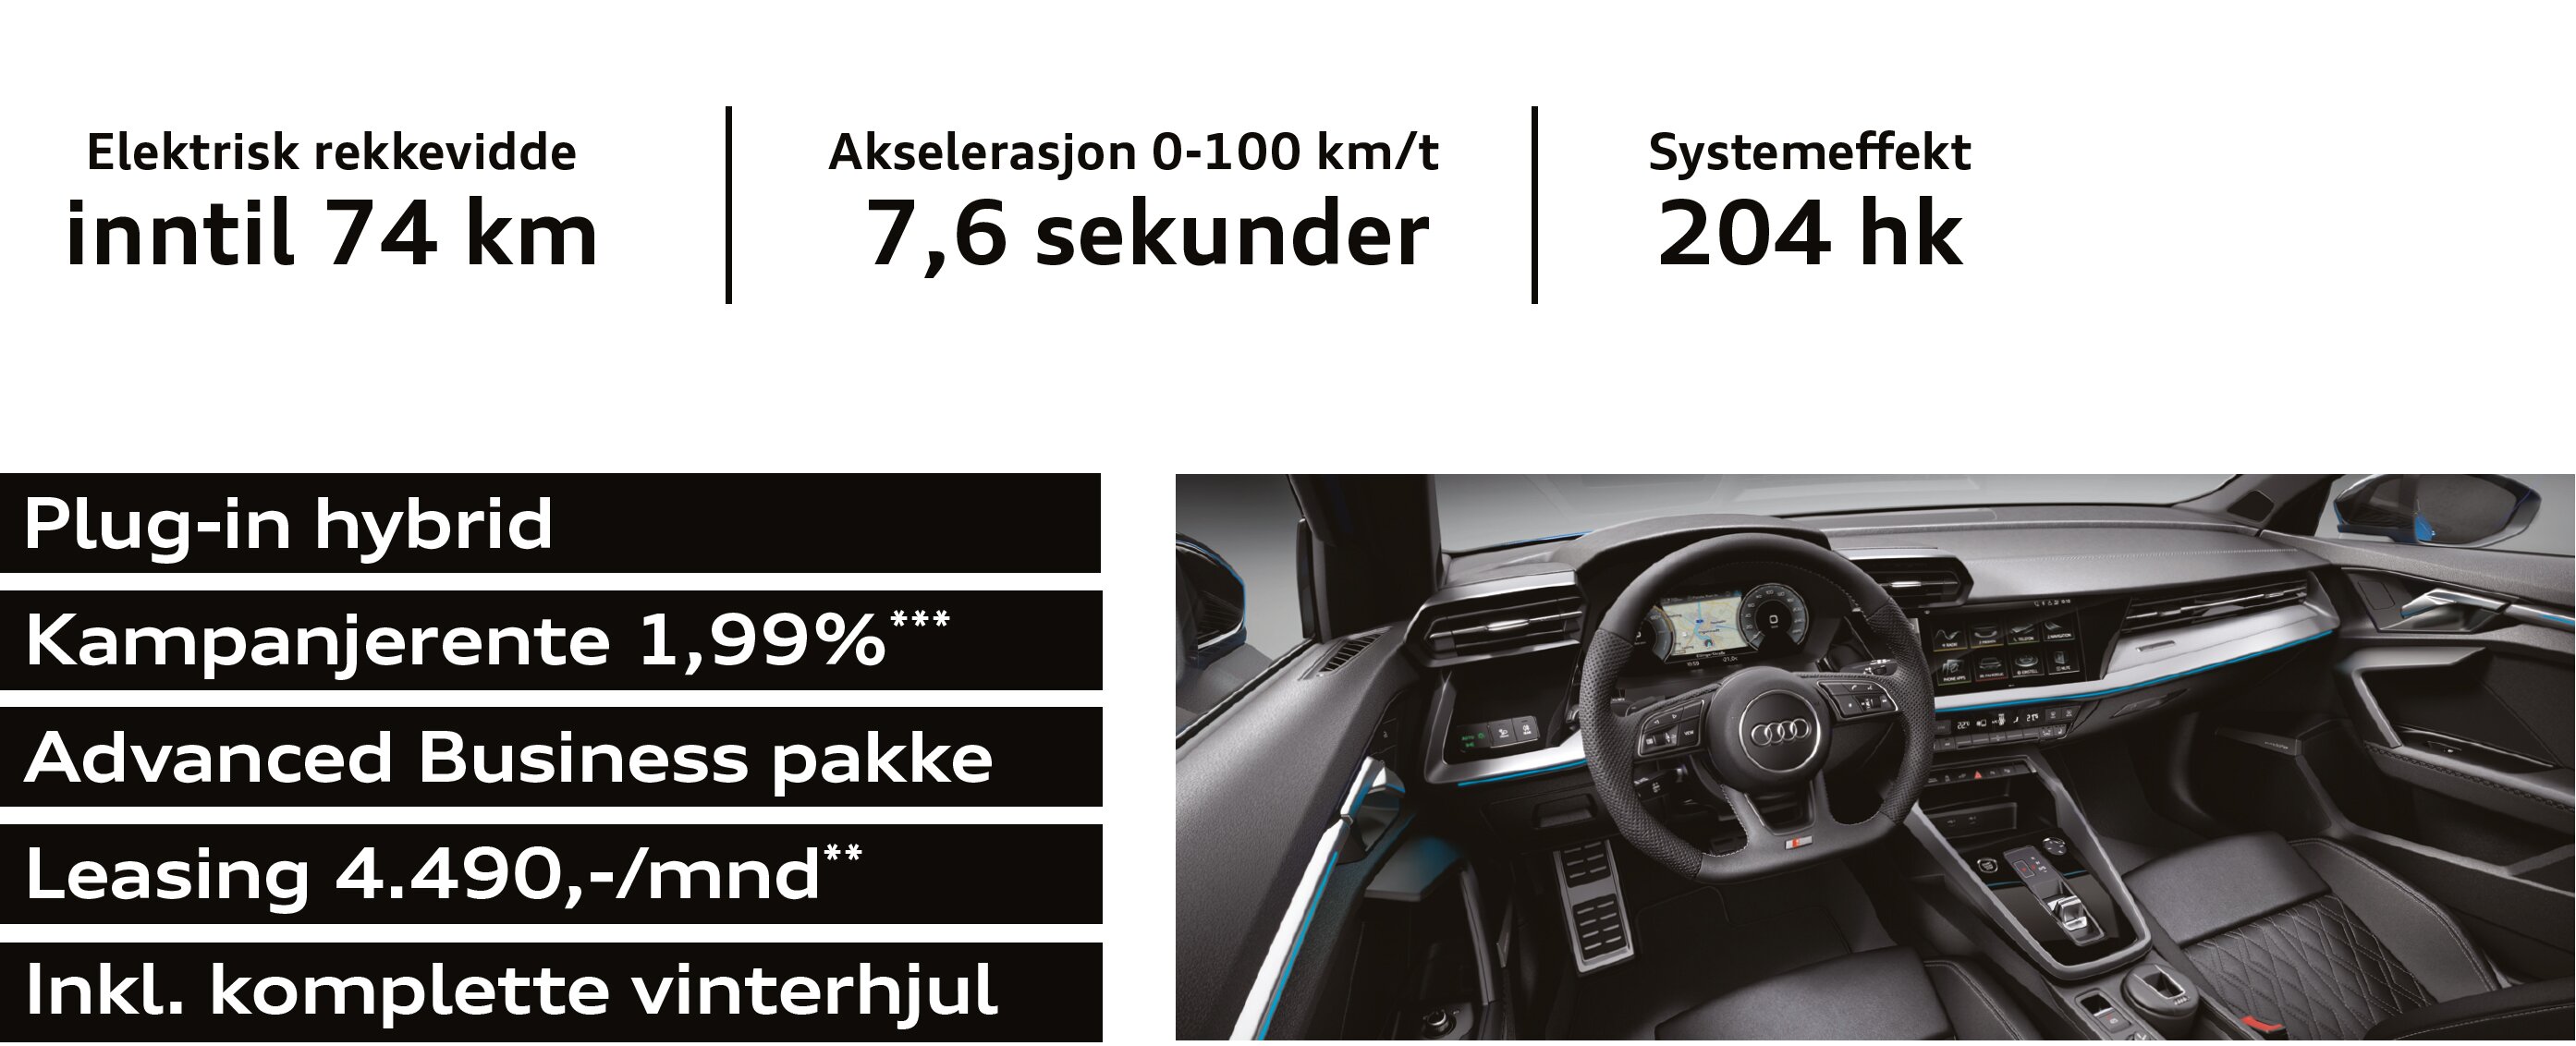 Audi A3 TFSI e teskt med leasing pris.jpg